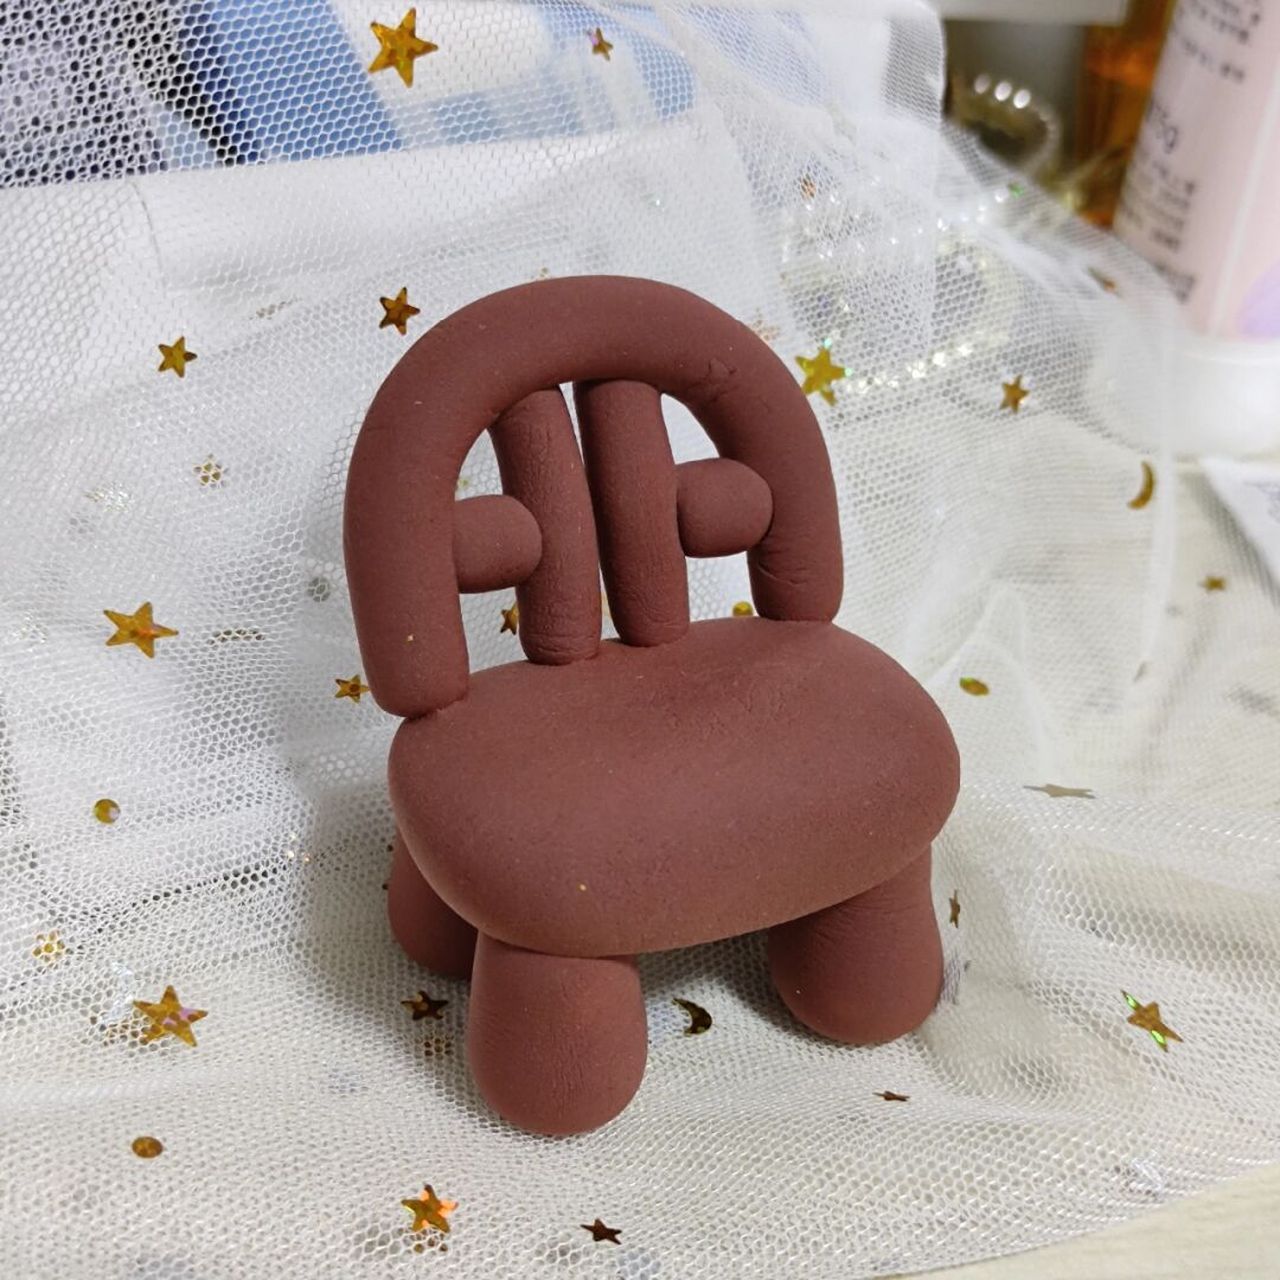 粘土做的软乎乎椅子(附设计简图) 椅子腿忒粗了,取名象腿椅,哈哈